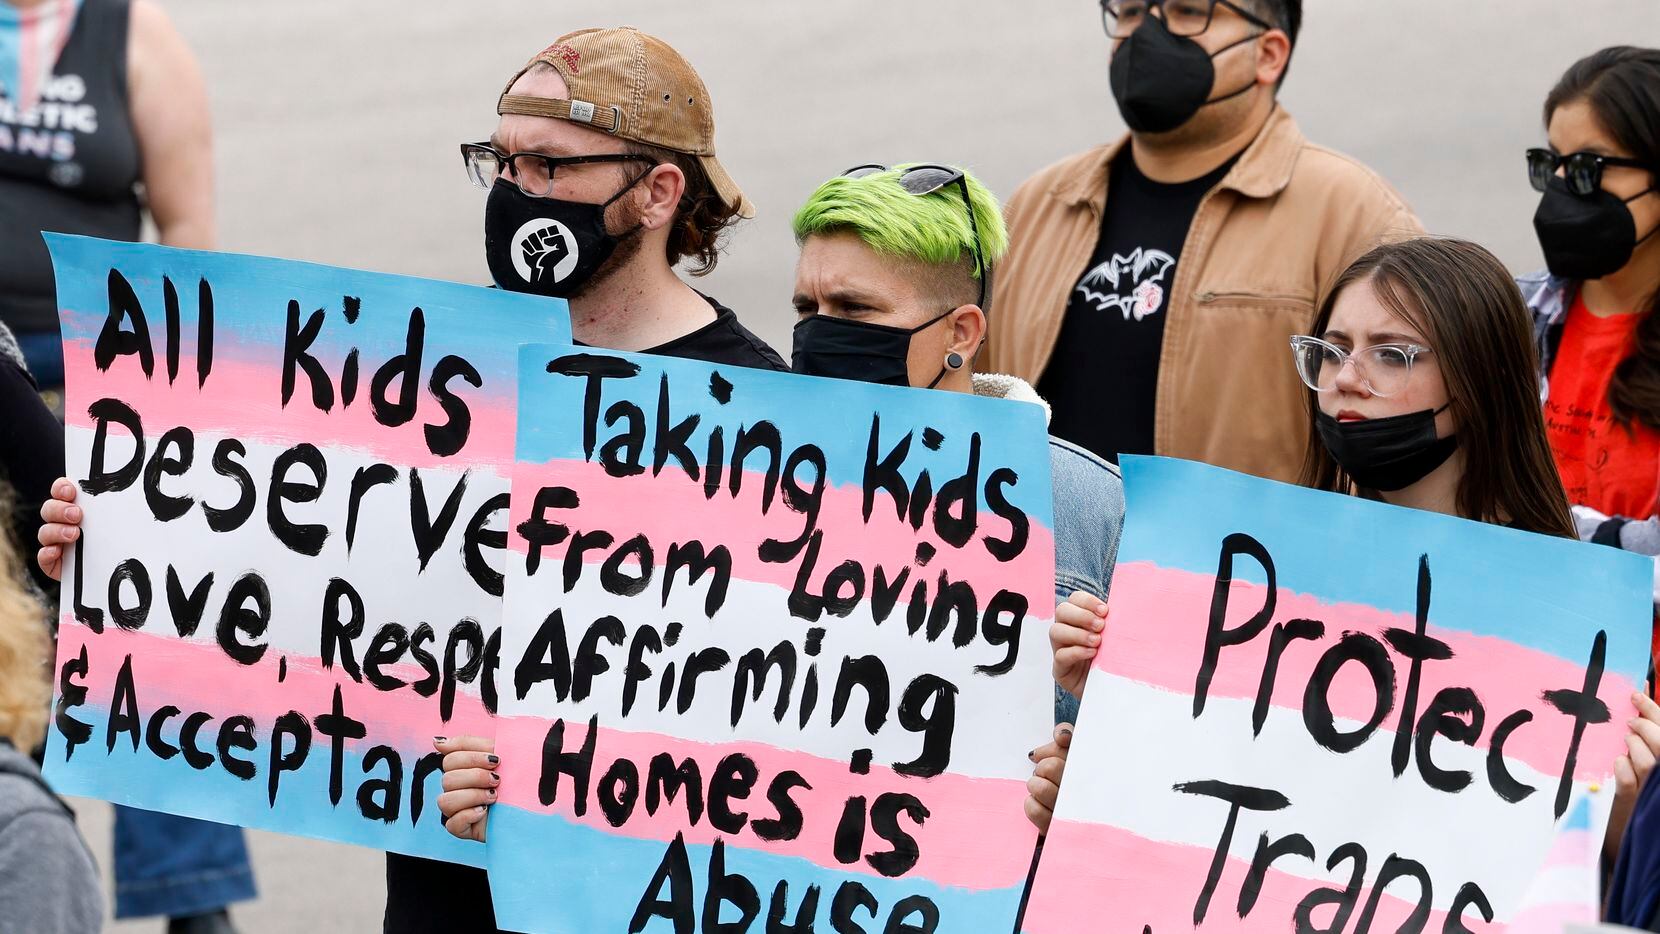 "Los niños trans imploran ayuda" dice uno de los carteles durante una protesta contra el...